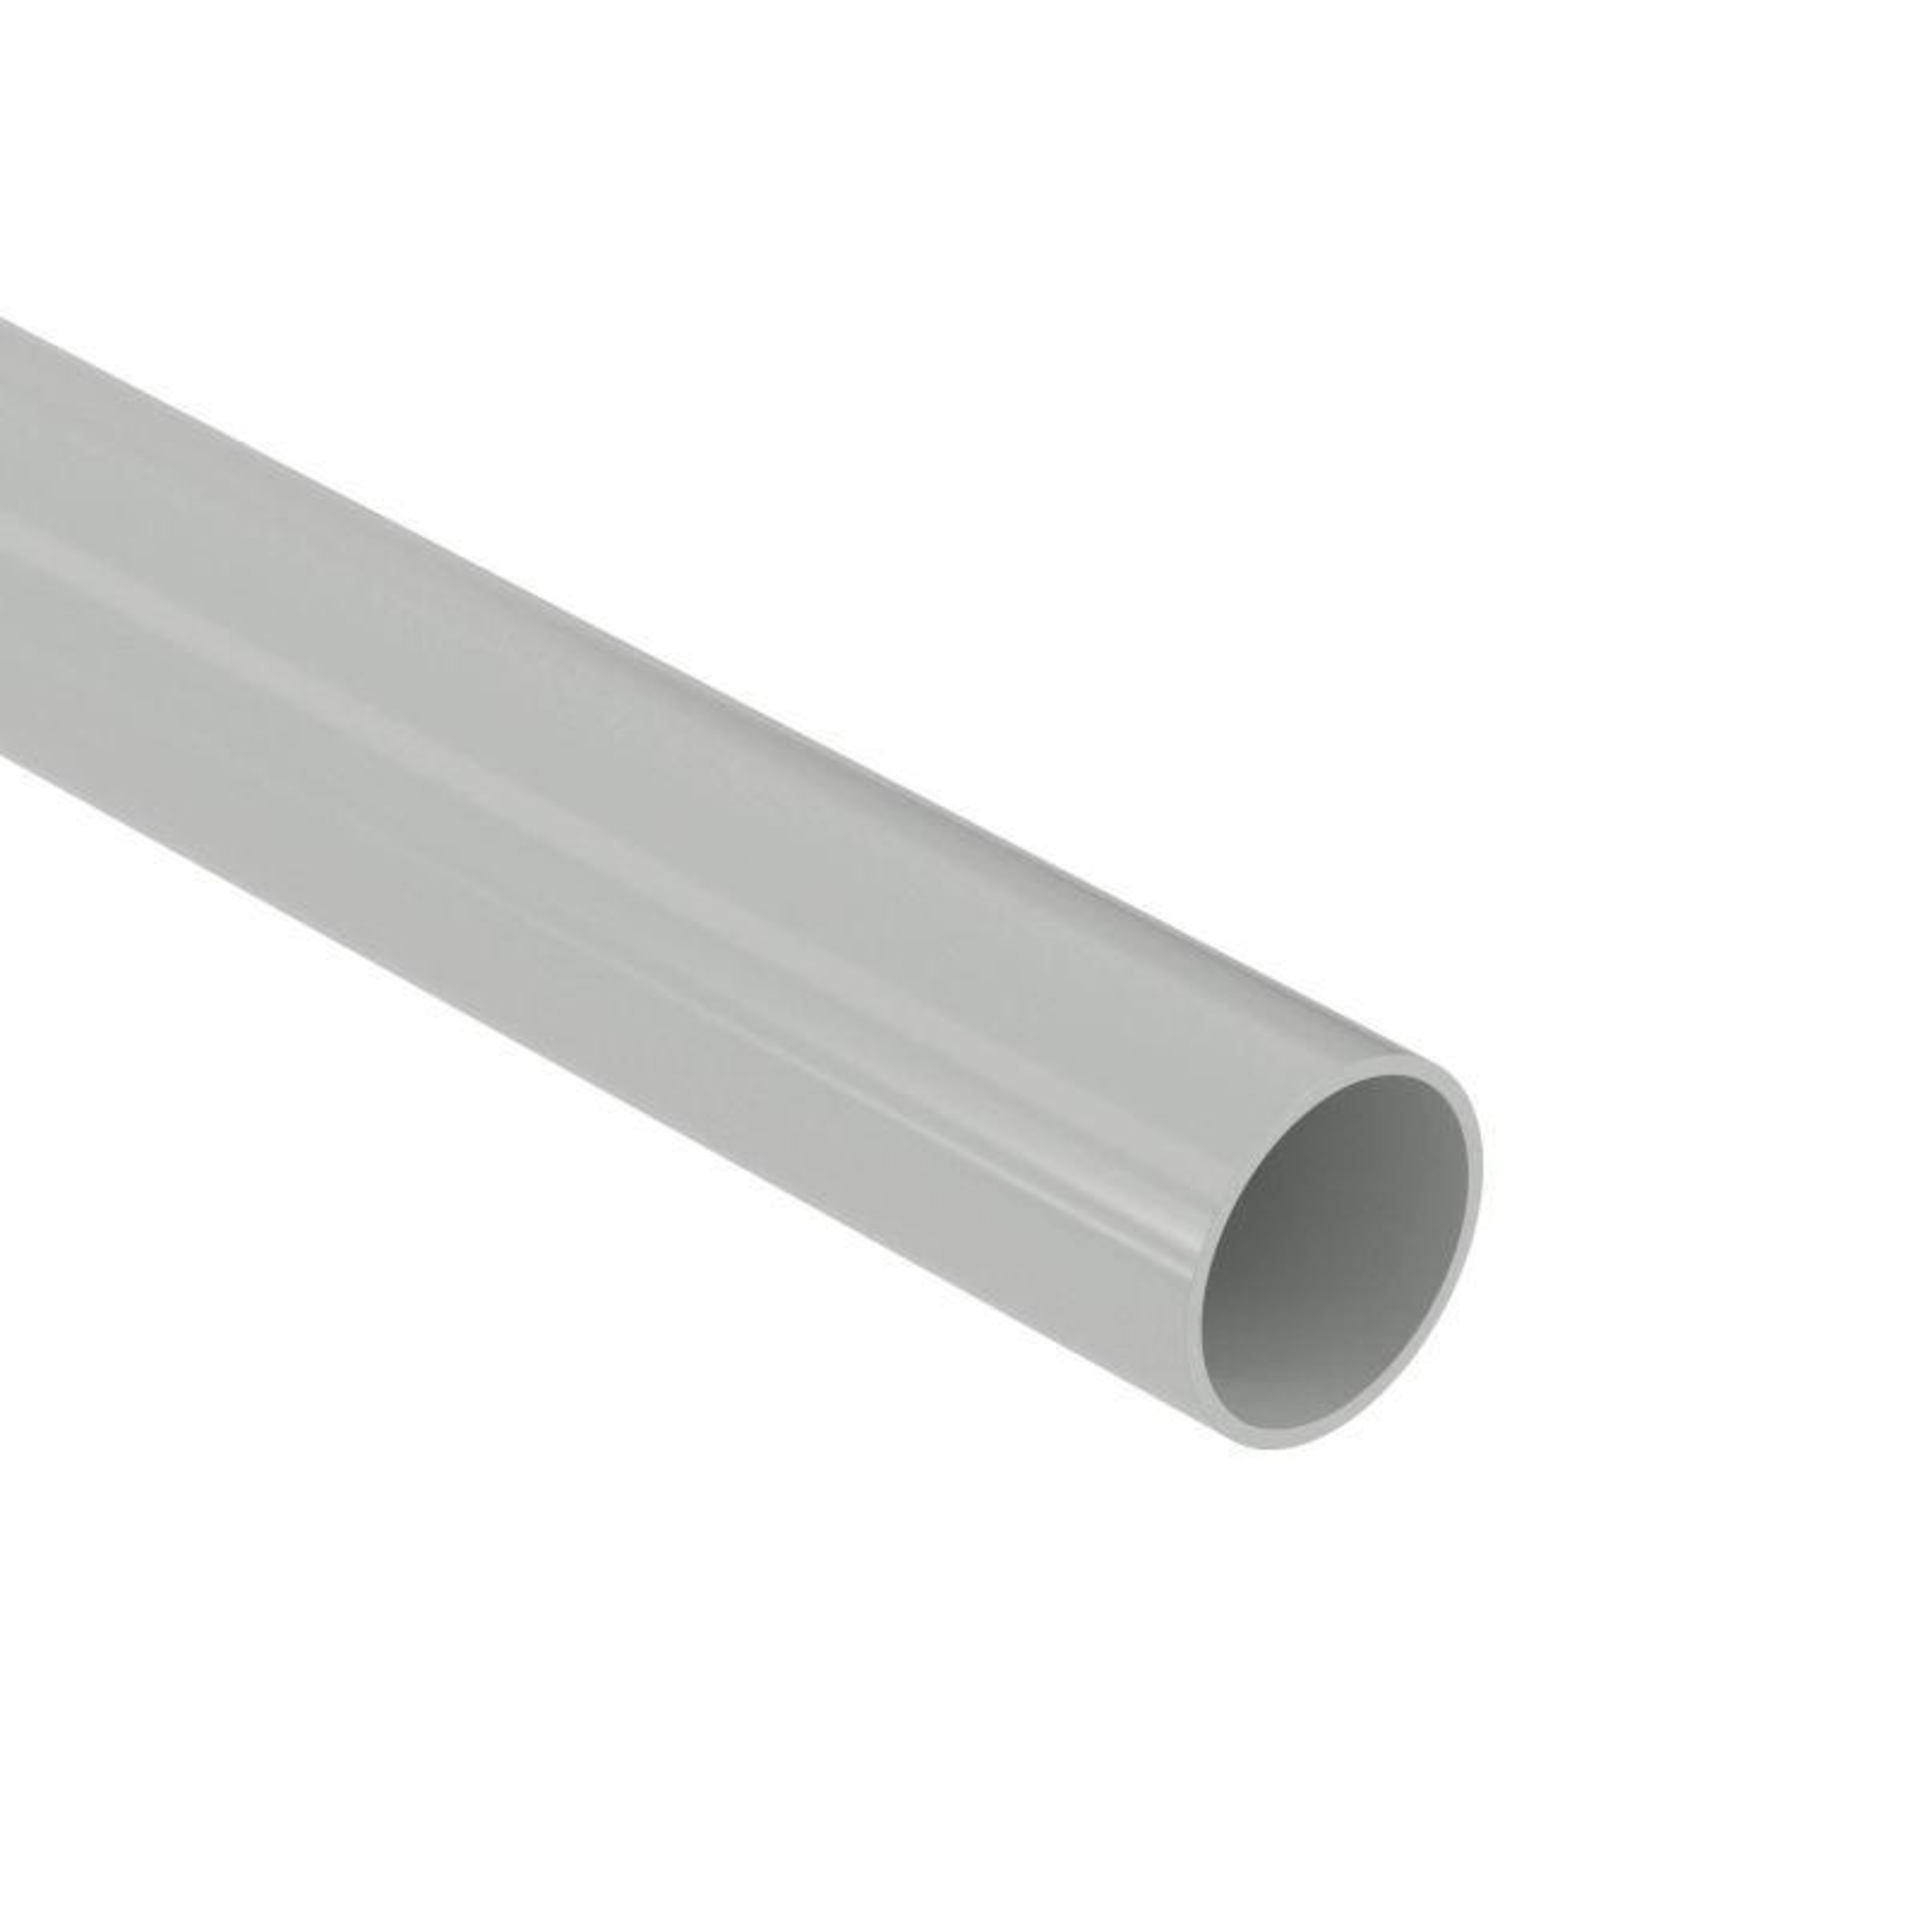 Труба гладкая Dkc ПВХ жесткая легкая d32мм атмосф. серый (длина 3м), 63932UF